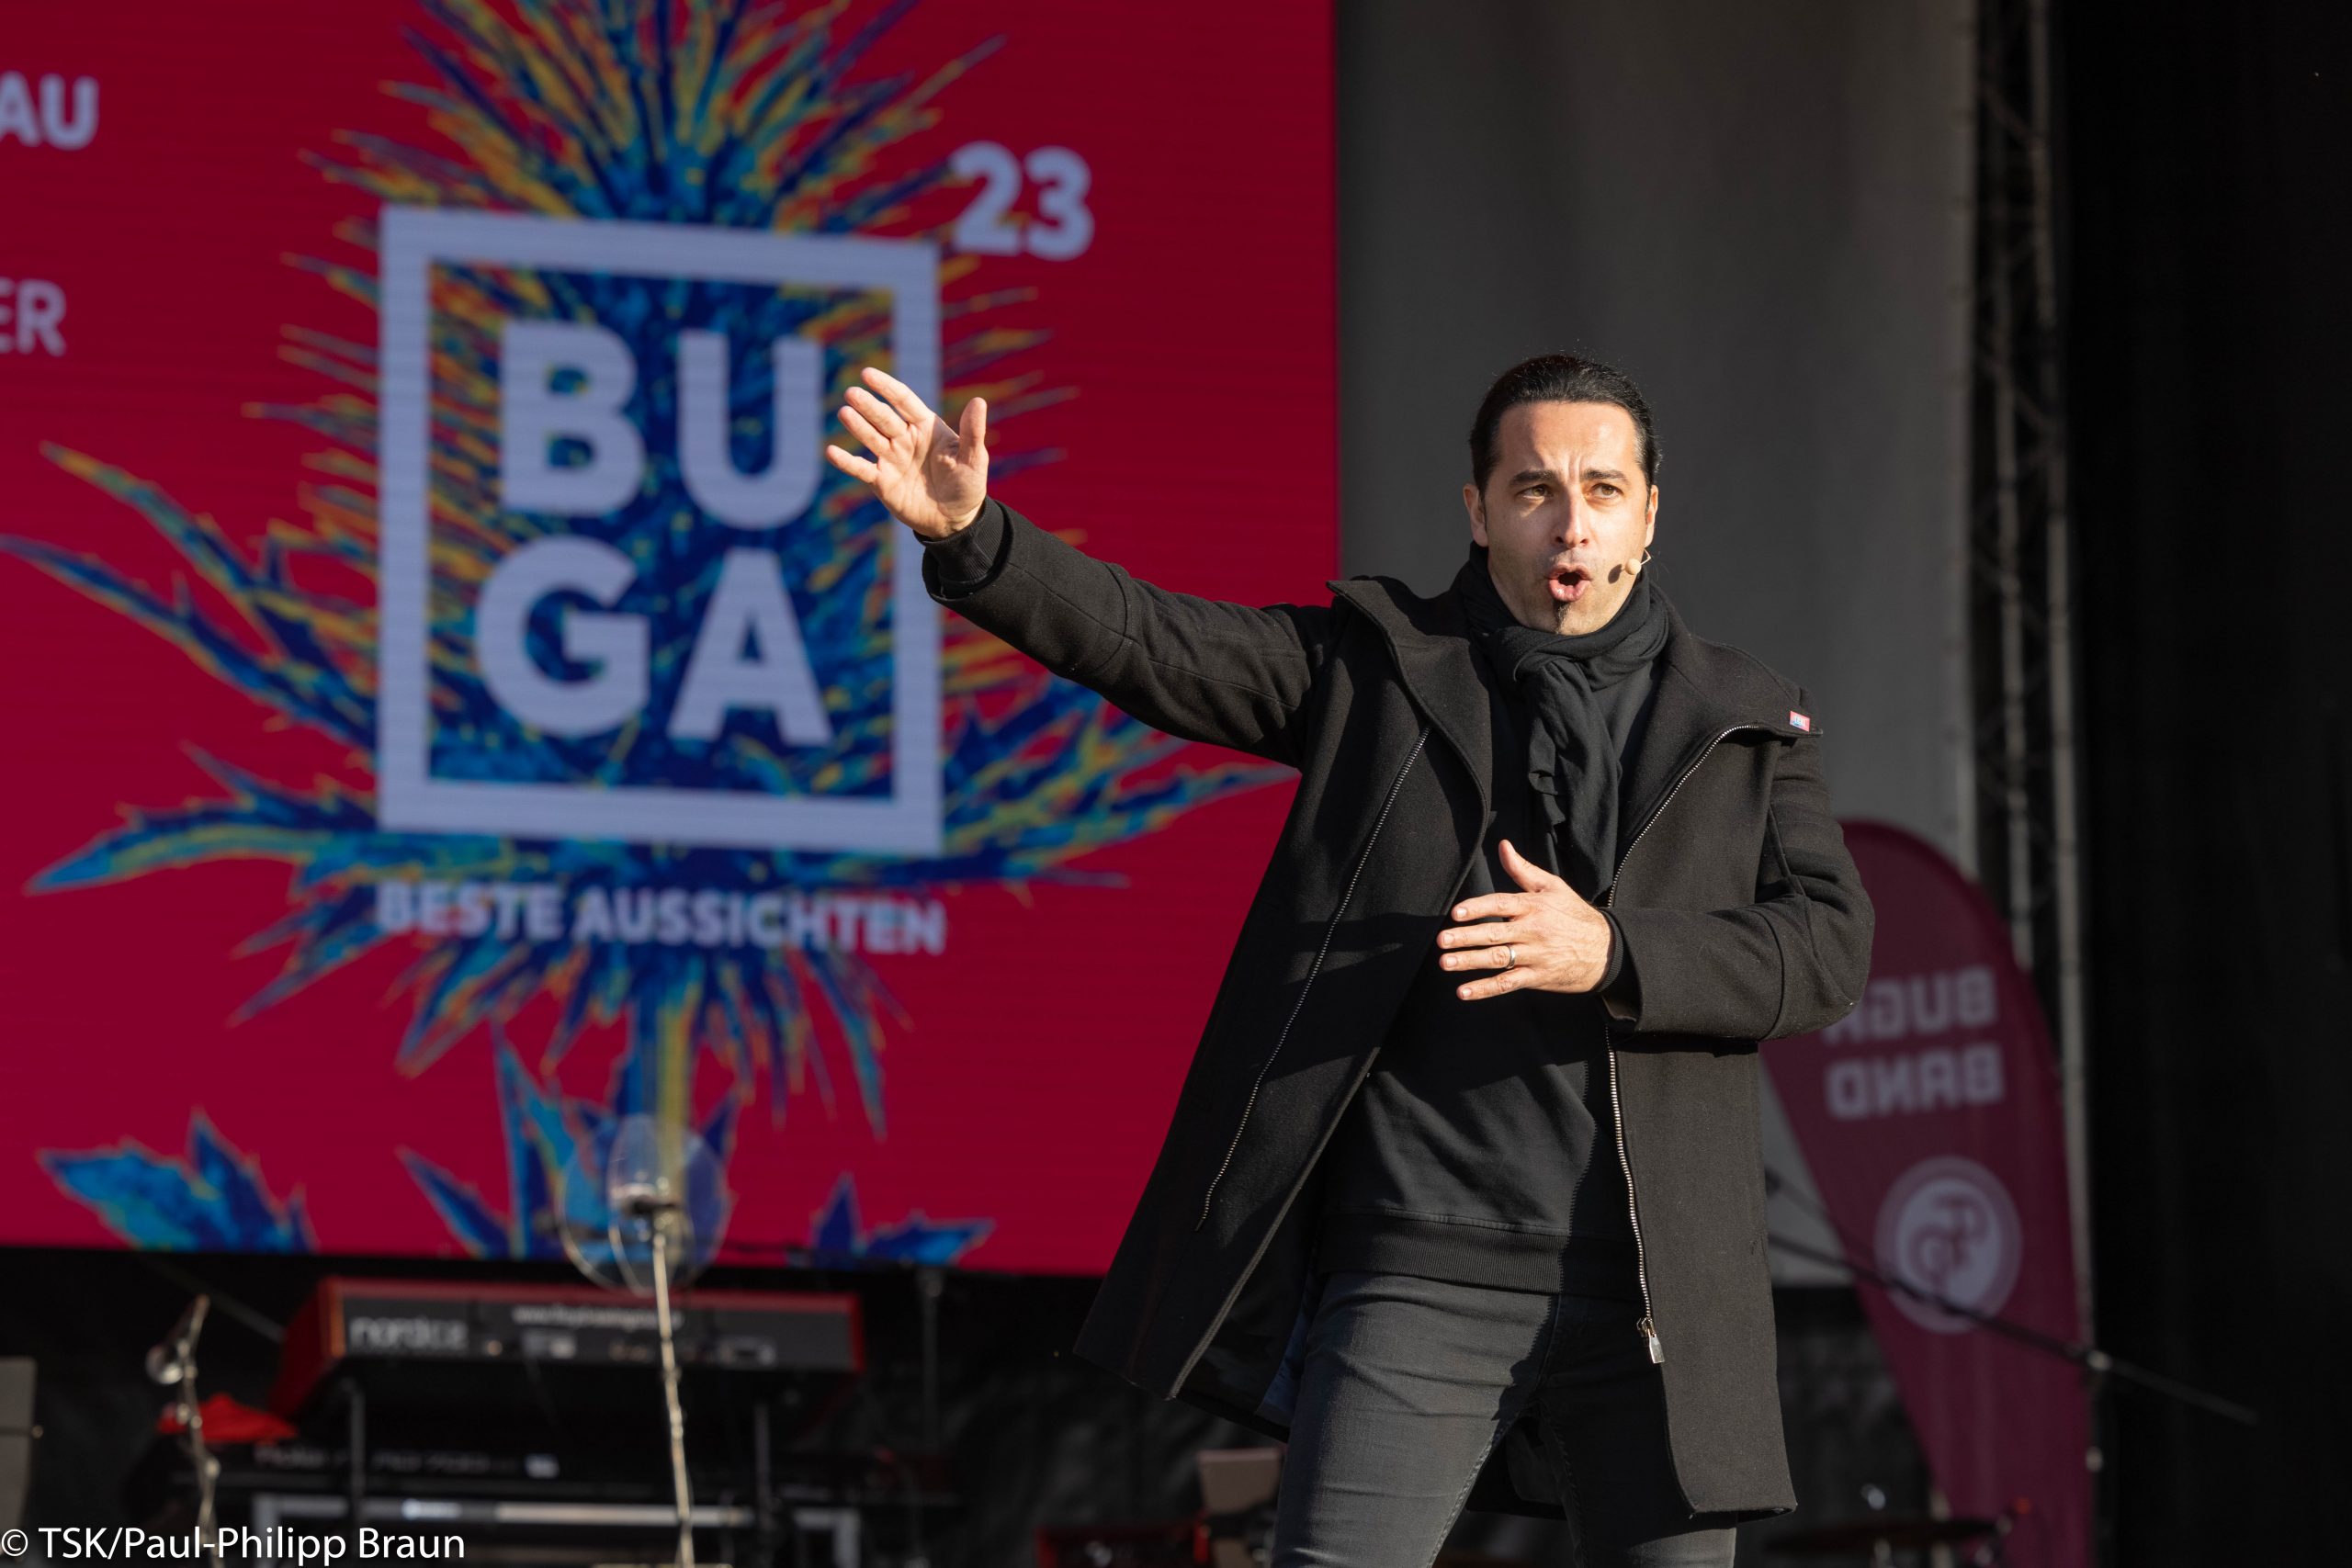 Bülent Ceylan in schwarzem Mantel auf der Bühne. Hinter ihm das Buga 23 Logo